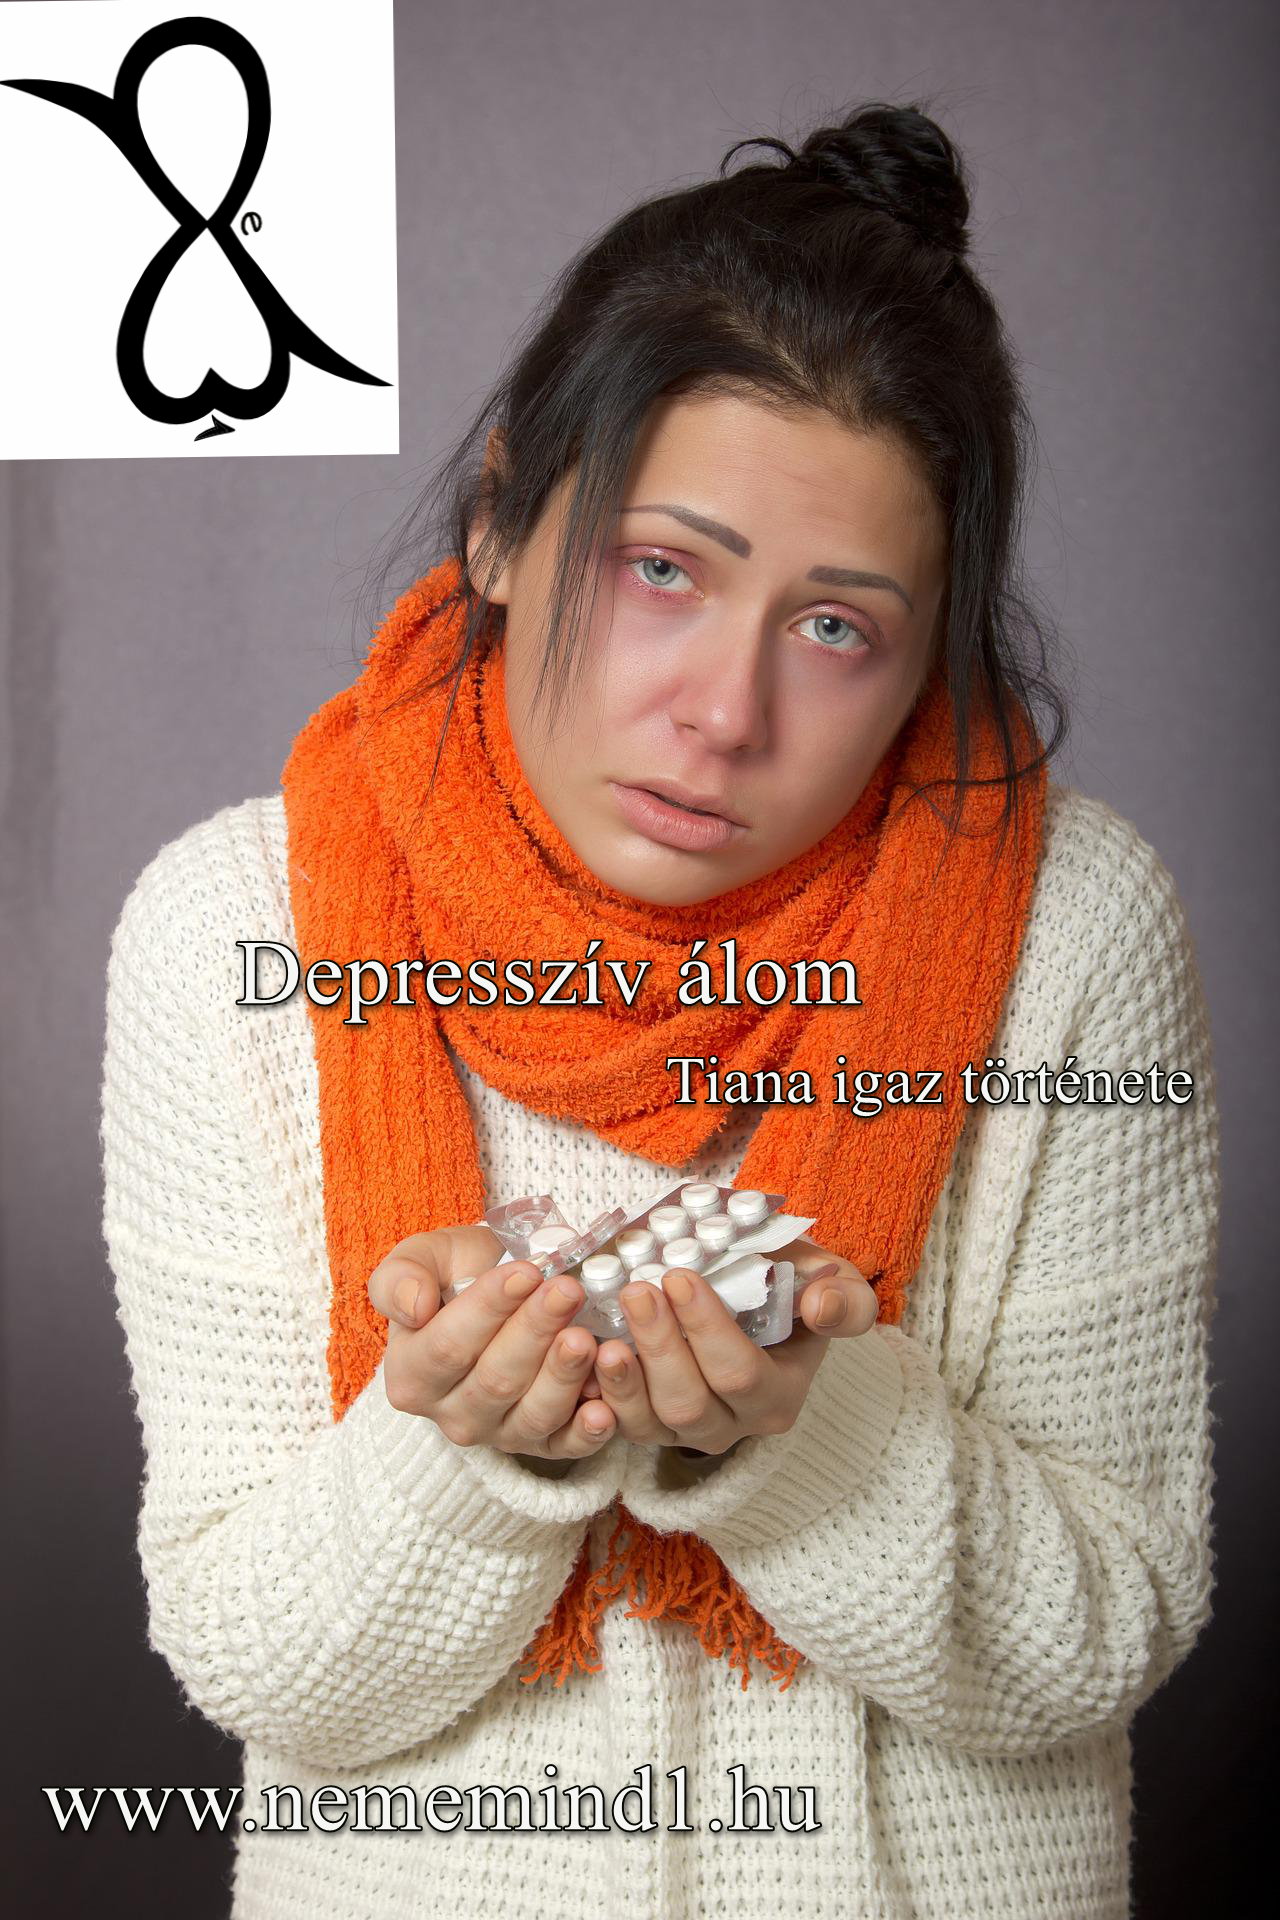 Read more about the article Depresszív álom (Tiana igaz története)